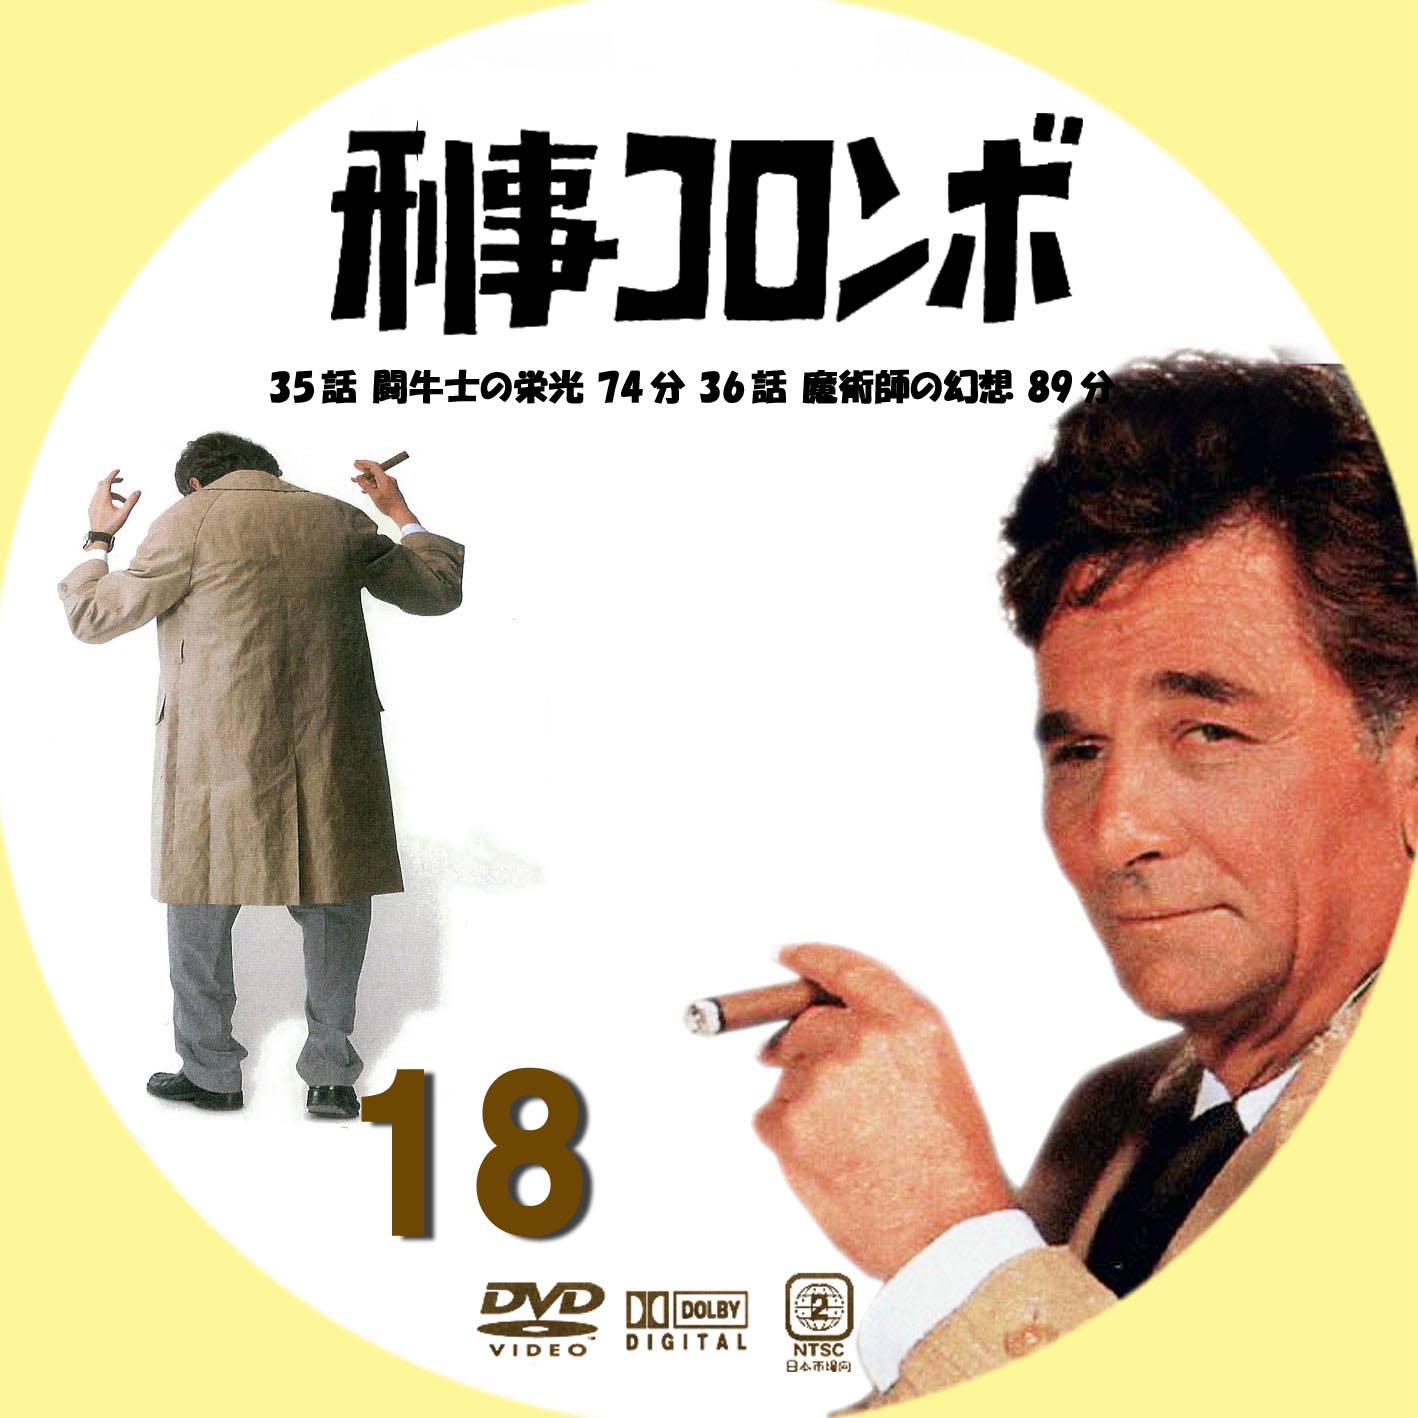 ドロ刑-警視庁捜査三課- Blu-ray BOX SexyZoneCDDVD - 邦画・日本映画